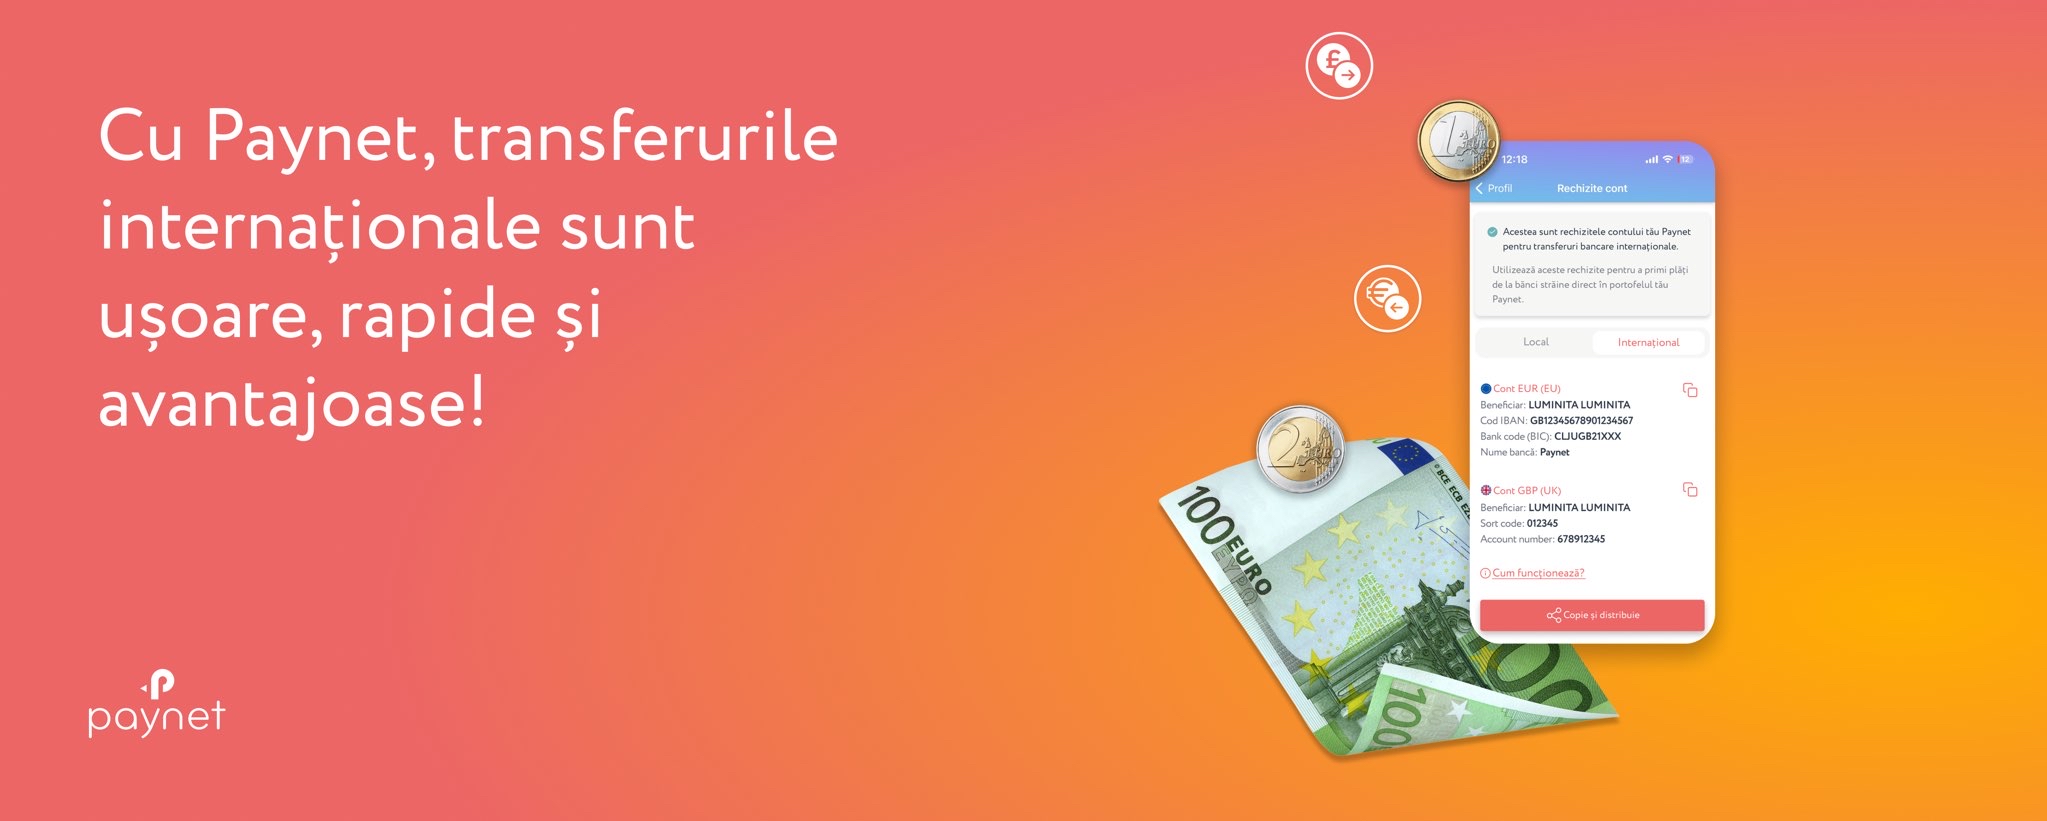 Cu ajutorul nostru poți primi bani din Europa în Moldova sau transfera bani în Europa pentru doar 1 euro, indiferent de suma transferului.